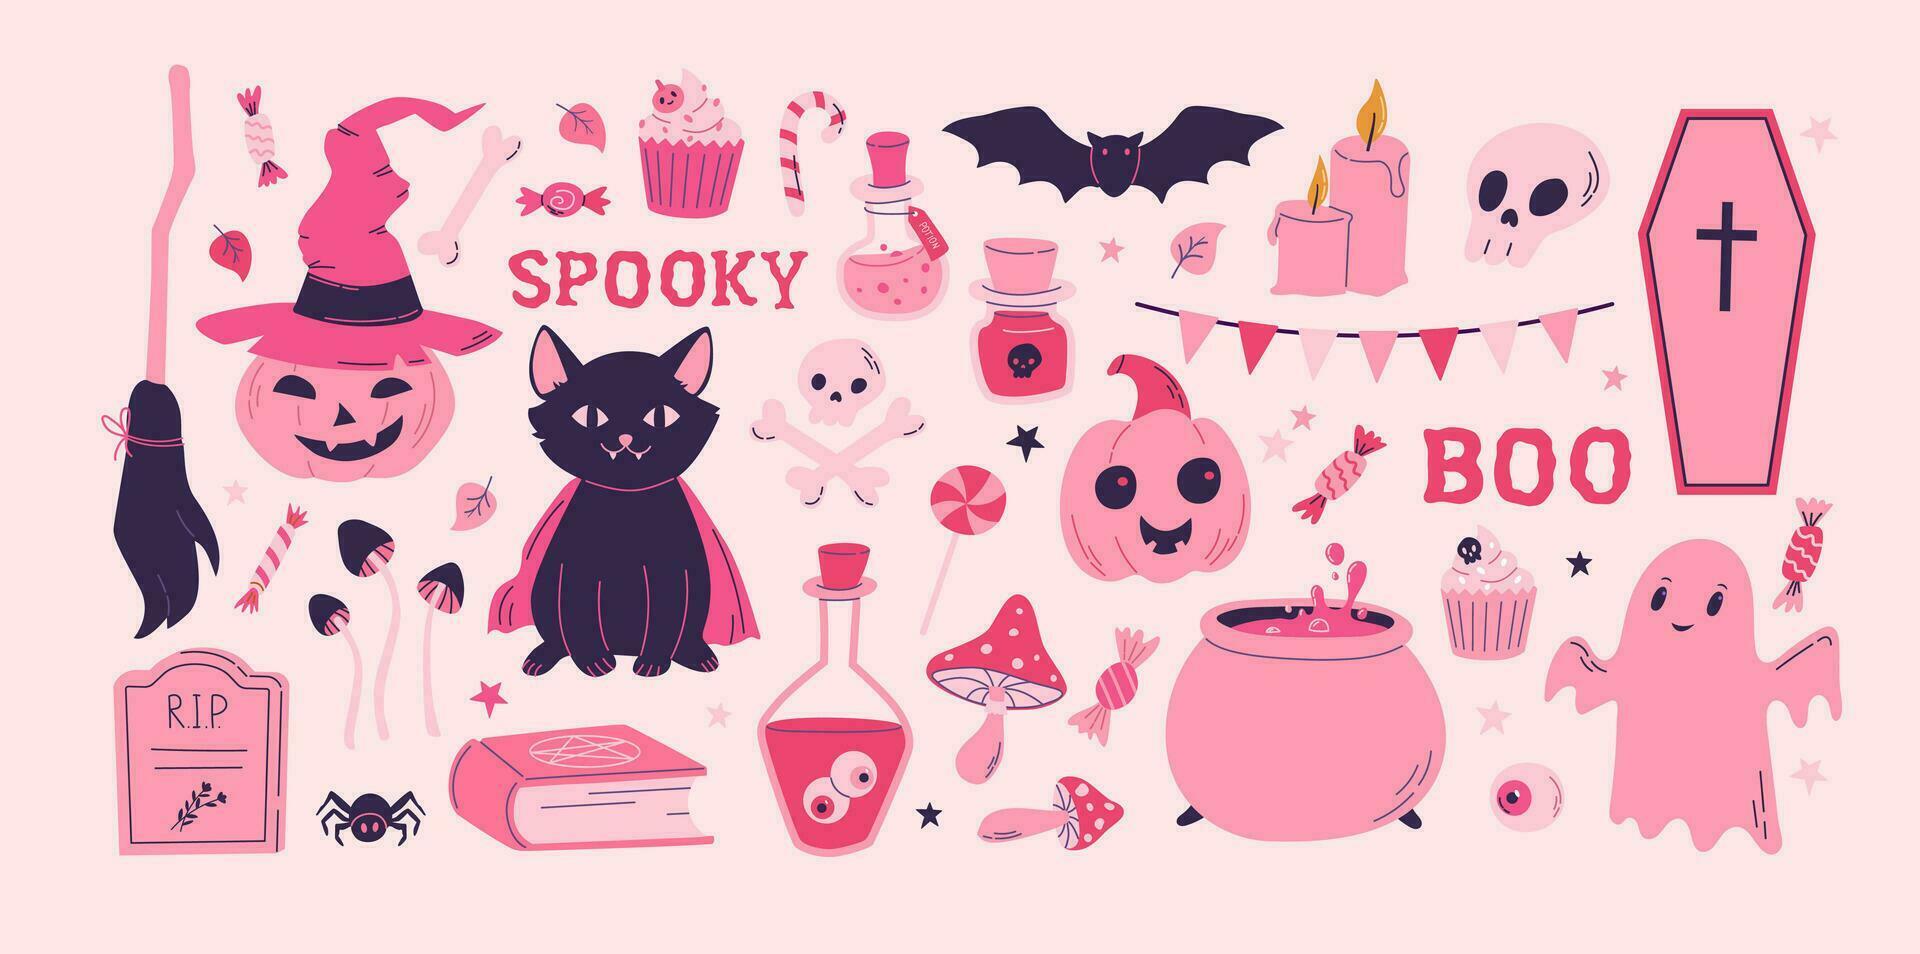 Cartoon pink Halloween vector set. Pumpkin, spirit, cat, bat, grave, candy decoration clipart. Barbiecore, pinkcore style